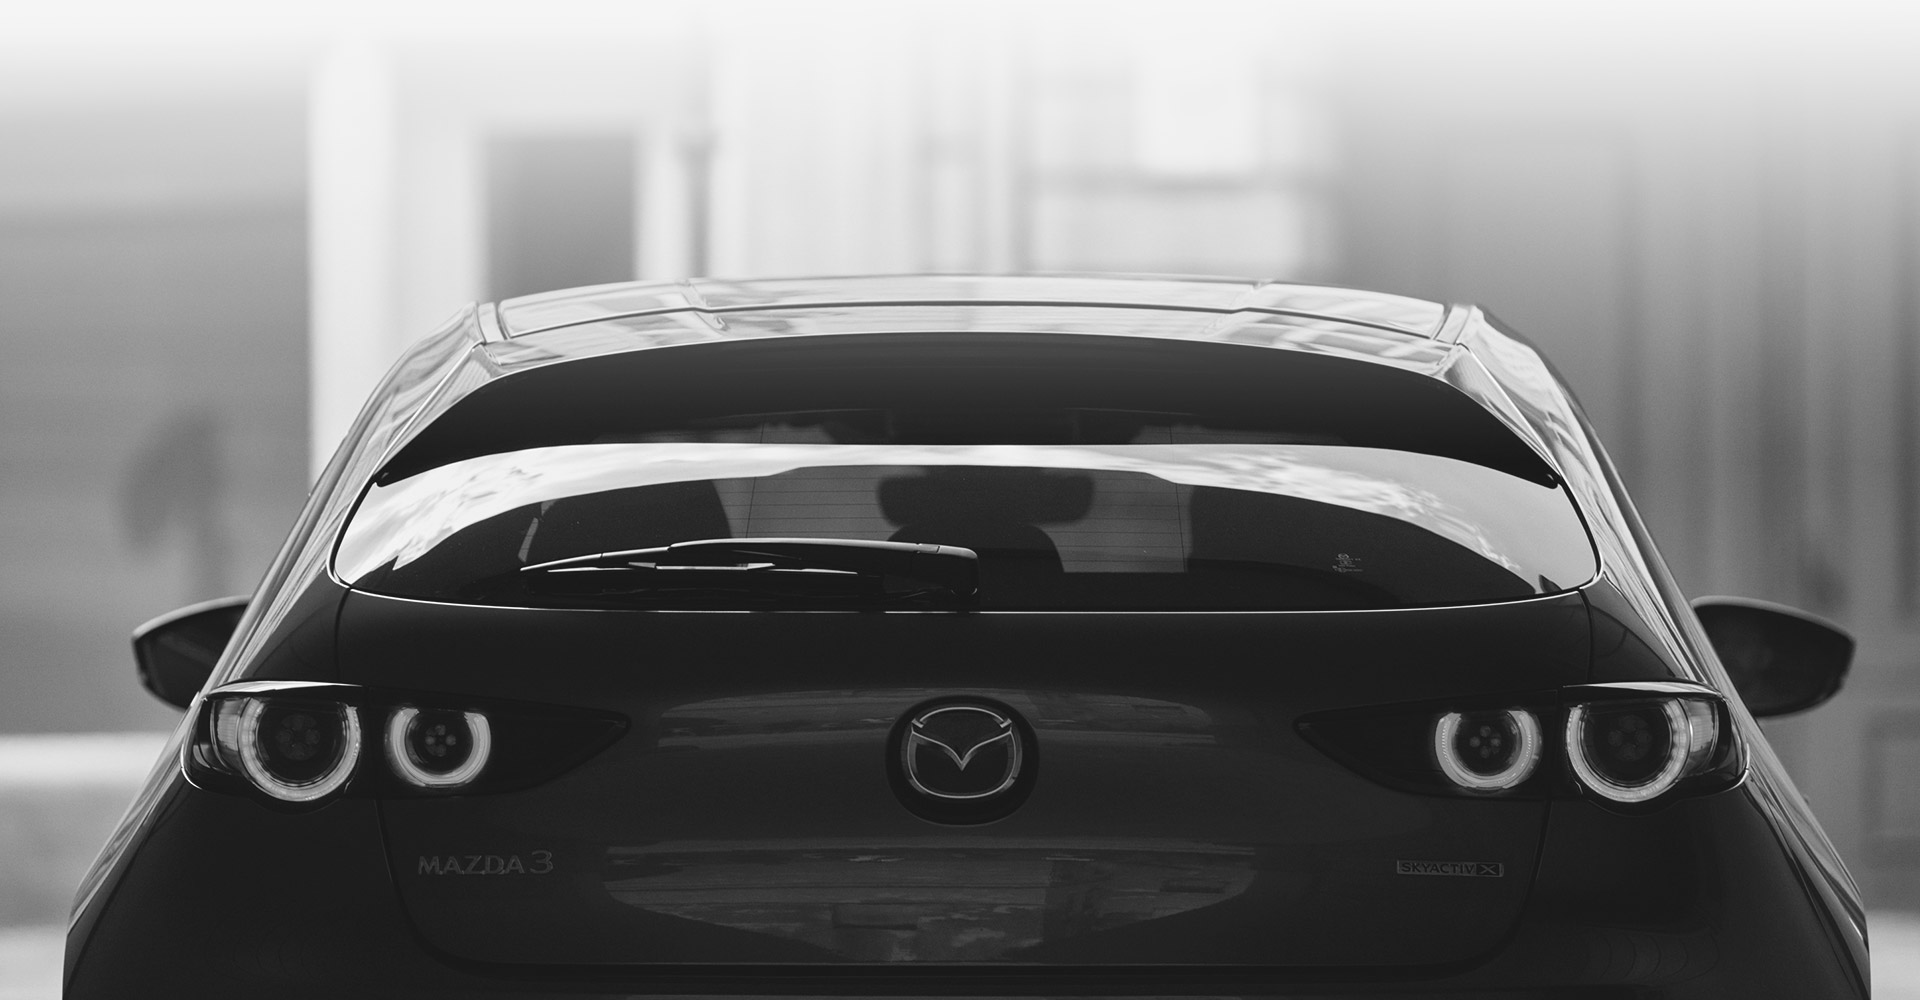 マツダ3のサイズを比較 セダンとファストバックでどう違う Mazda3徹底分析ブログ